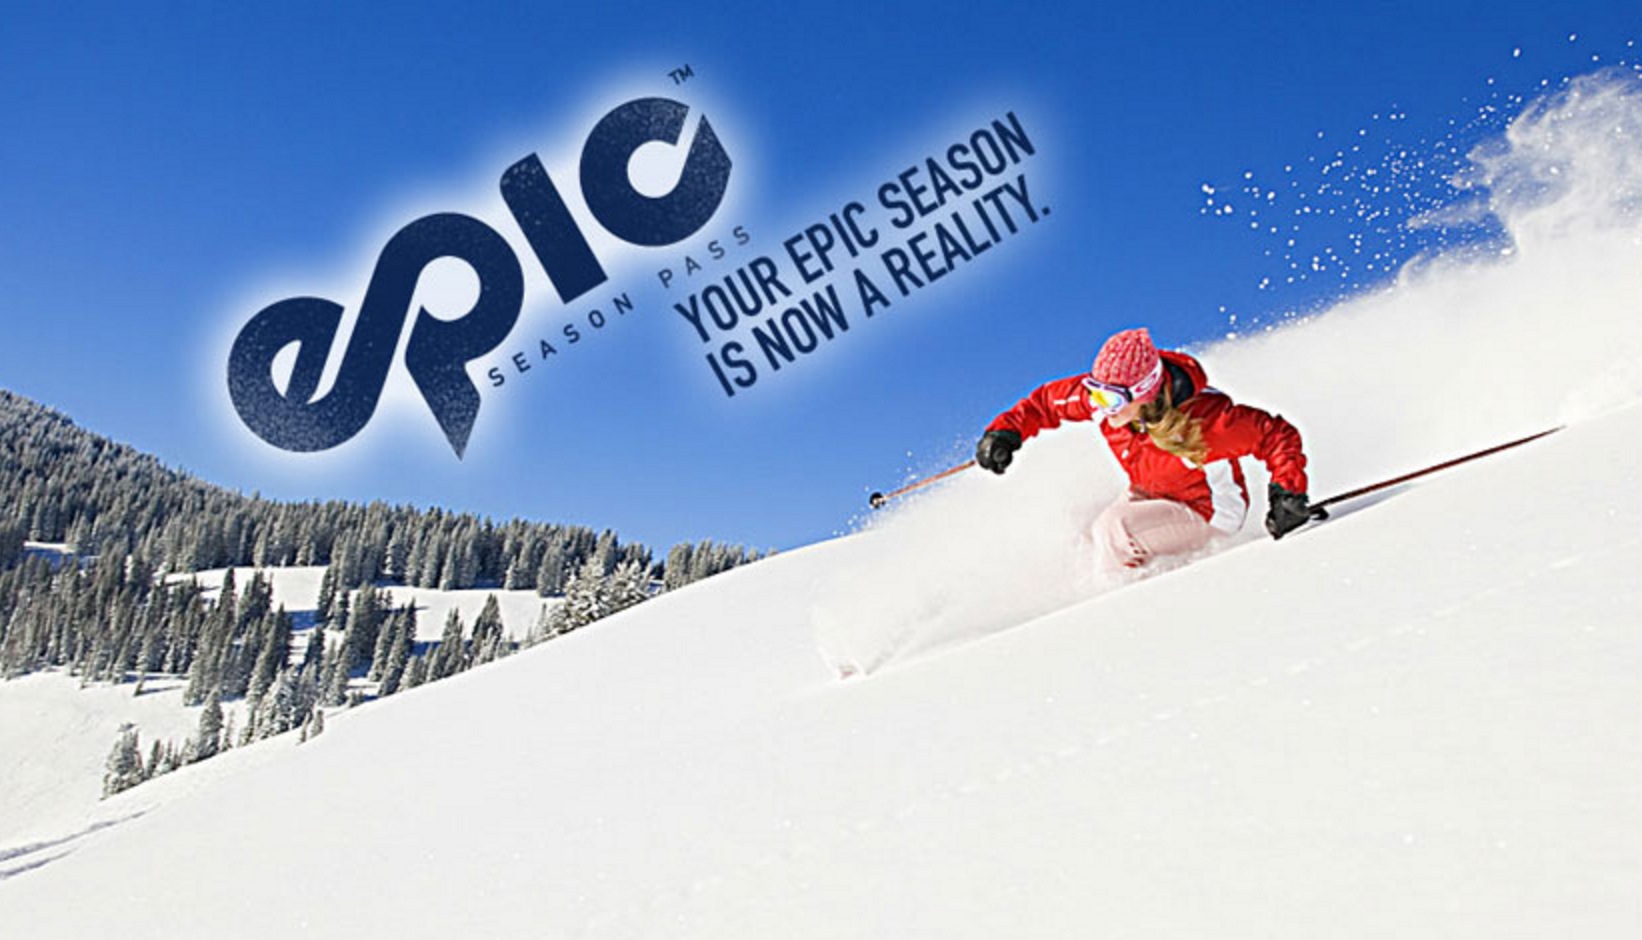 epic ski pass nurse discount